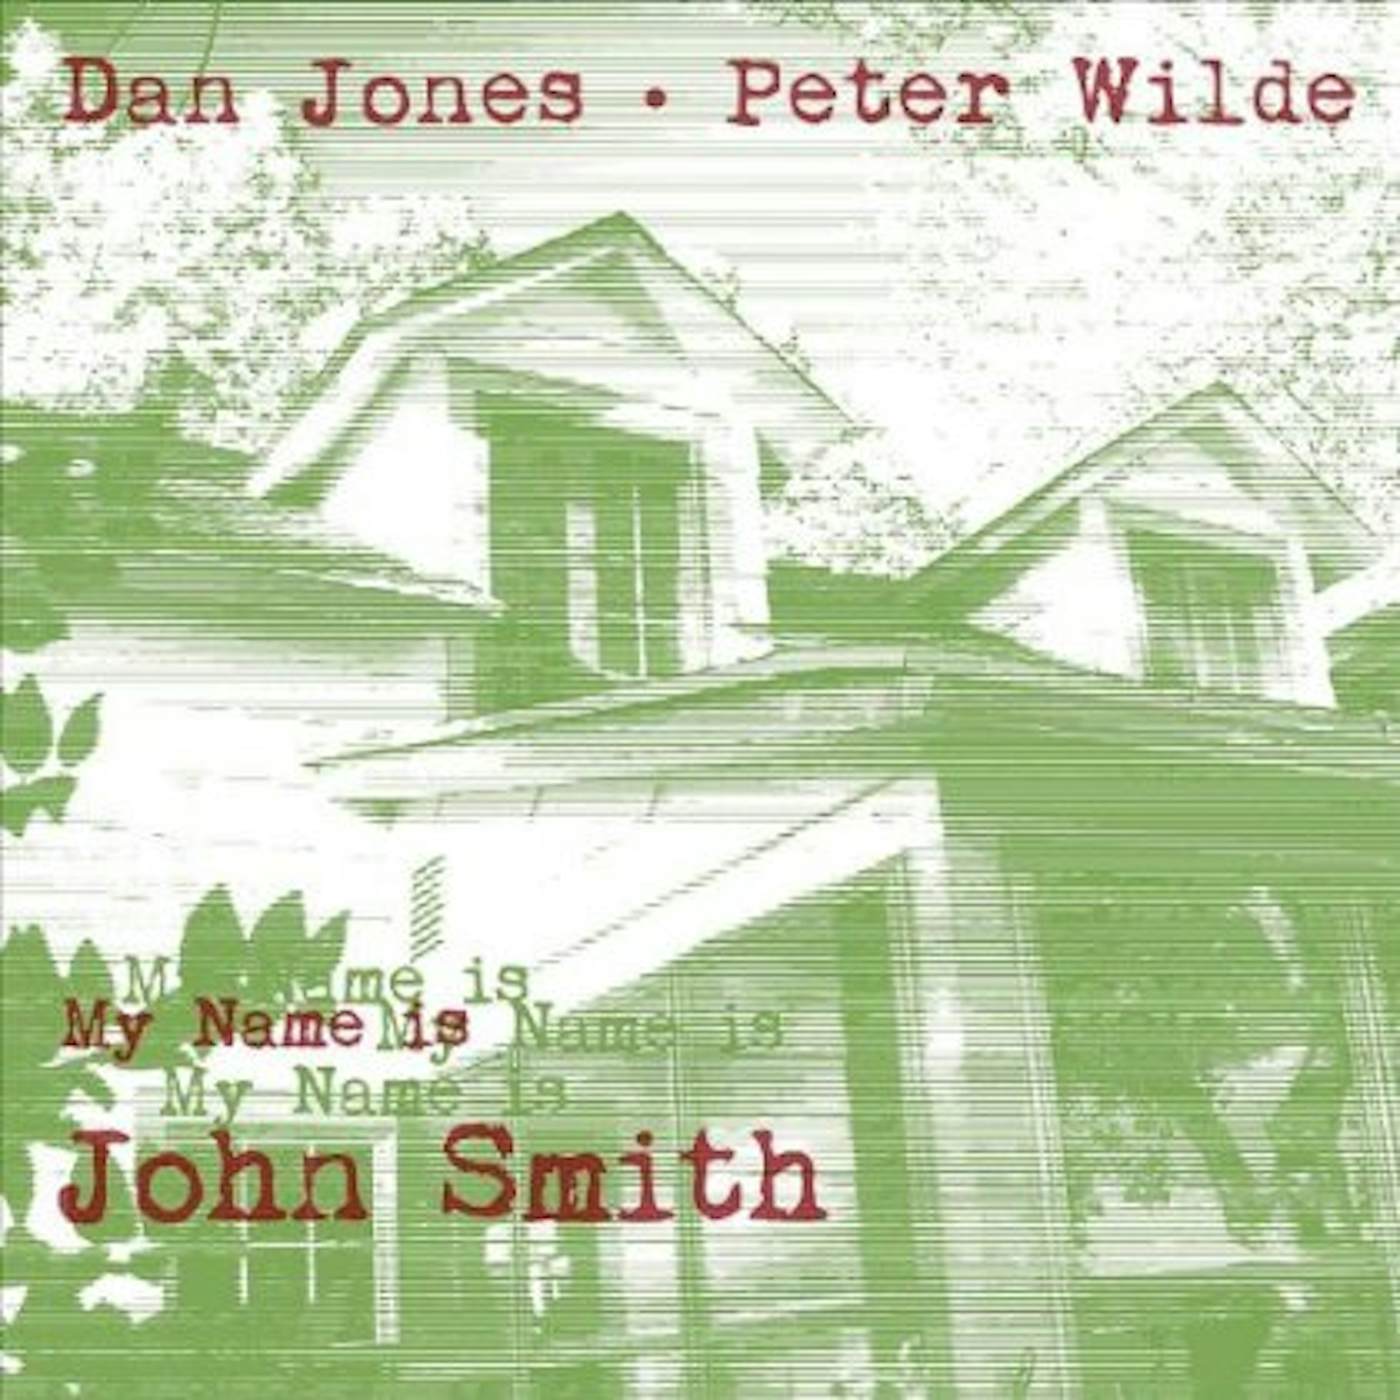 Dan Jones & Peter Wilde My Name Is John Smith Vinyl Record